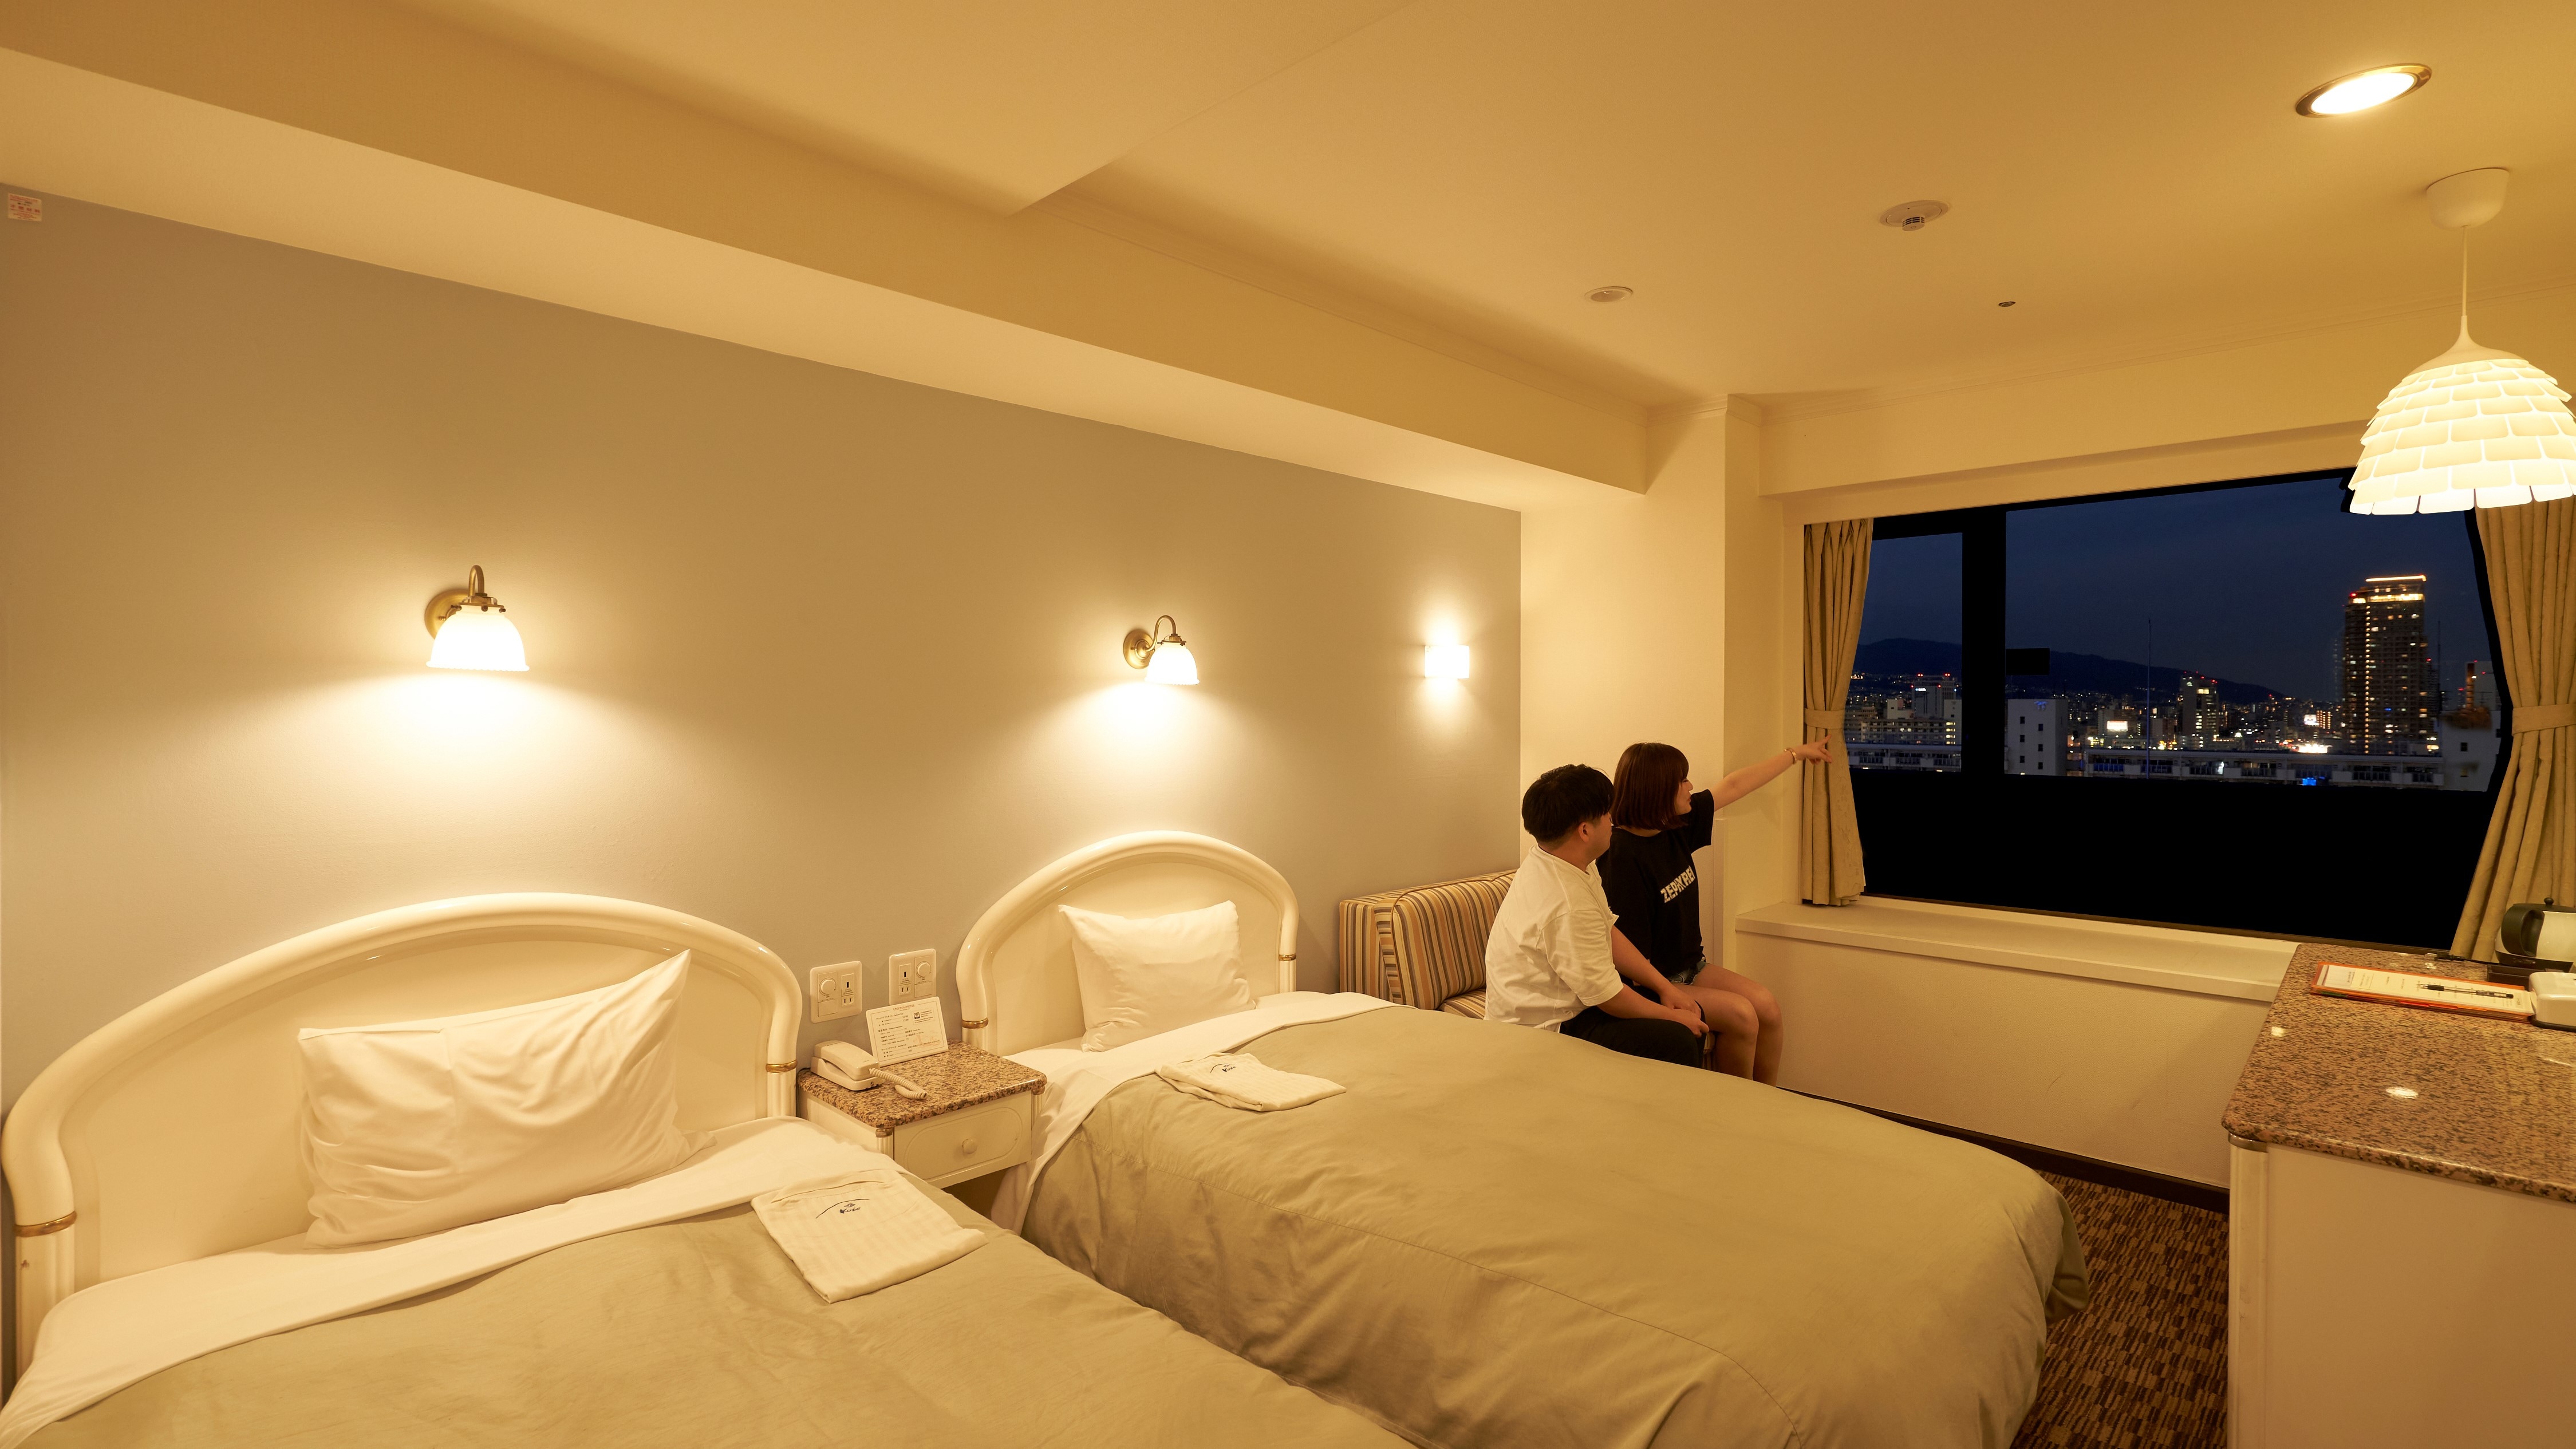 ★ [客房夜景] 從酒店高層看到的夜景被選為“神戶夜景百景”之一。